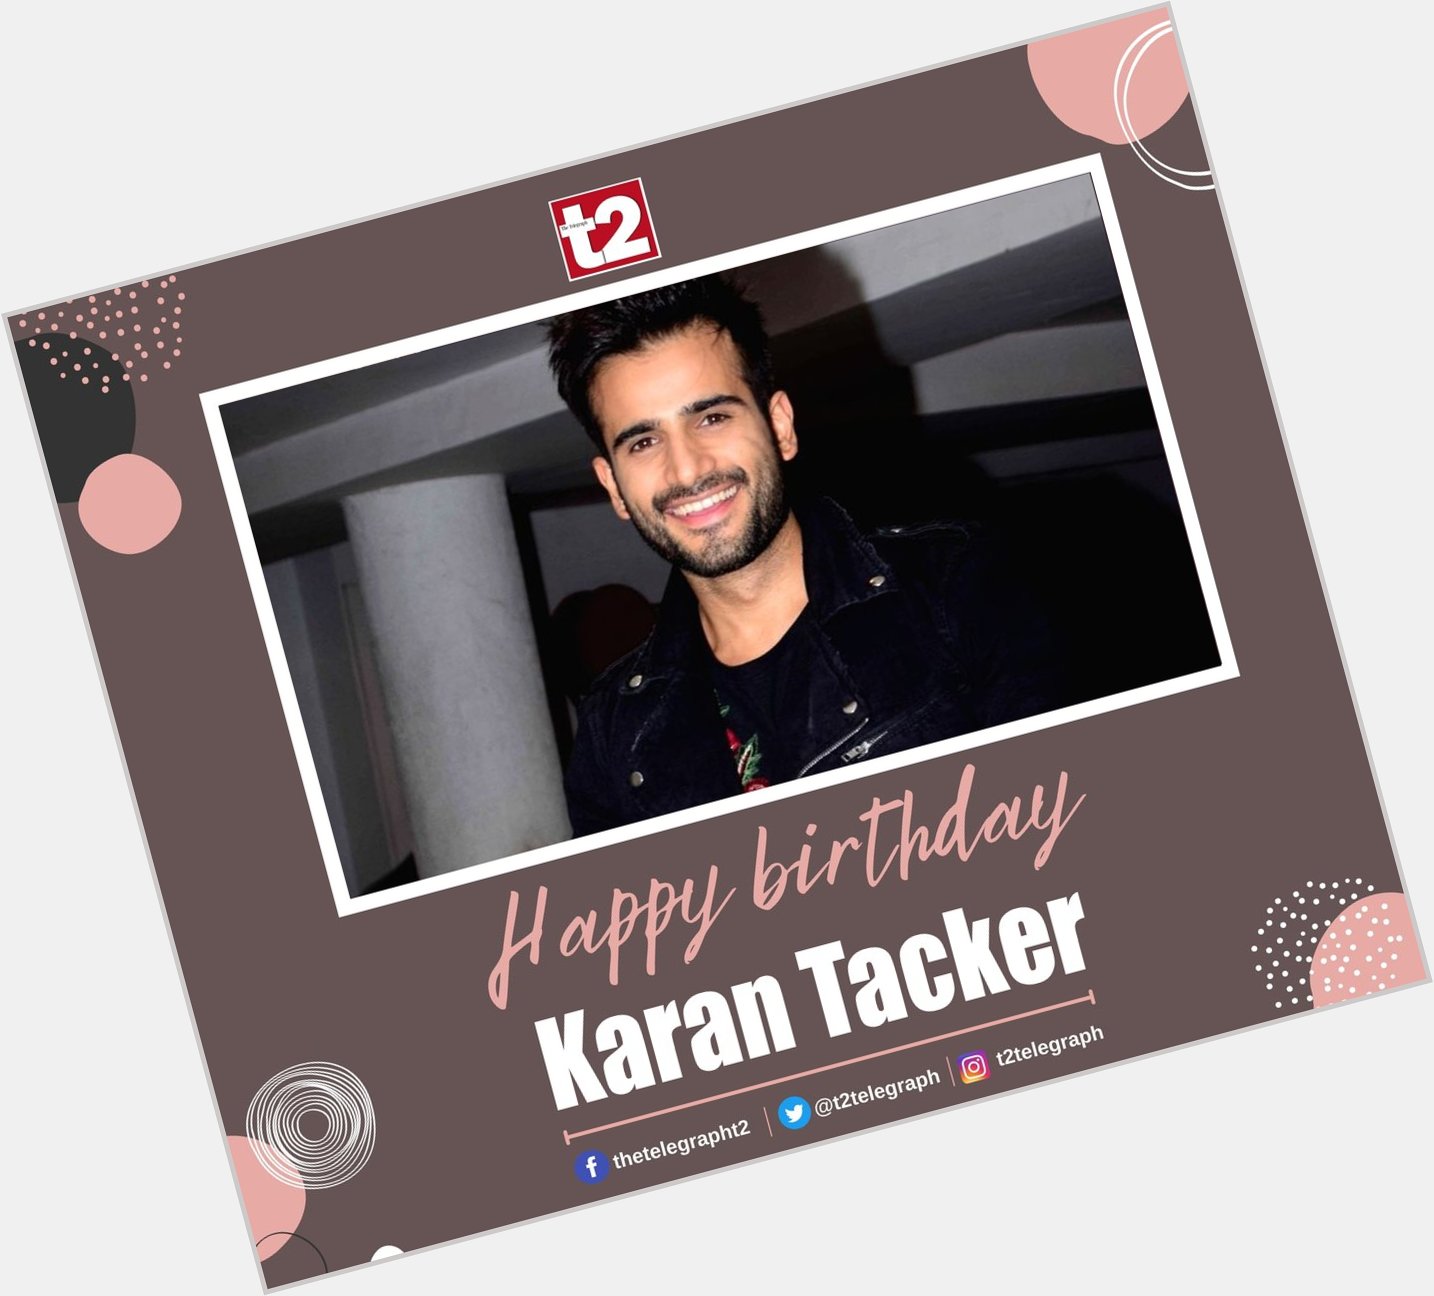 T2 wishes small-screen heartthrob Karan Tacker a very happy birthday 